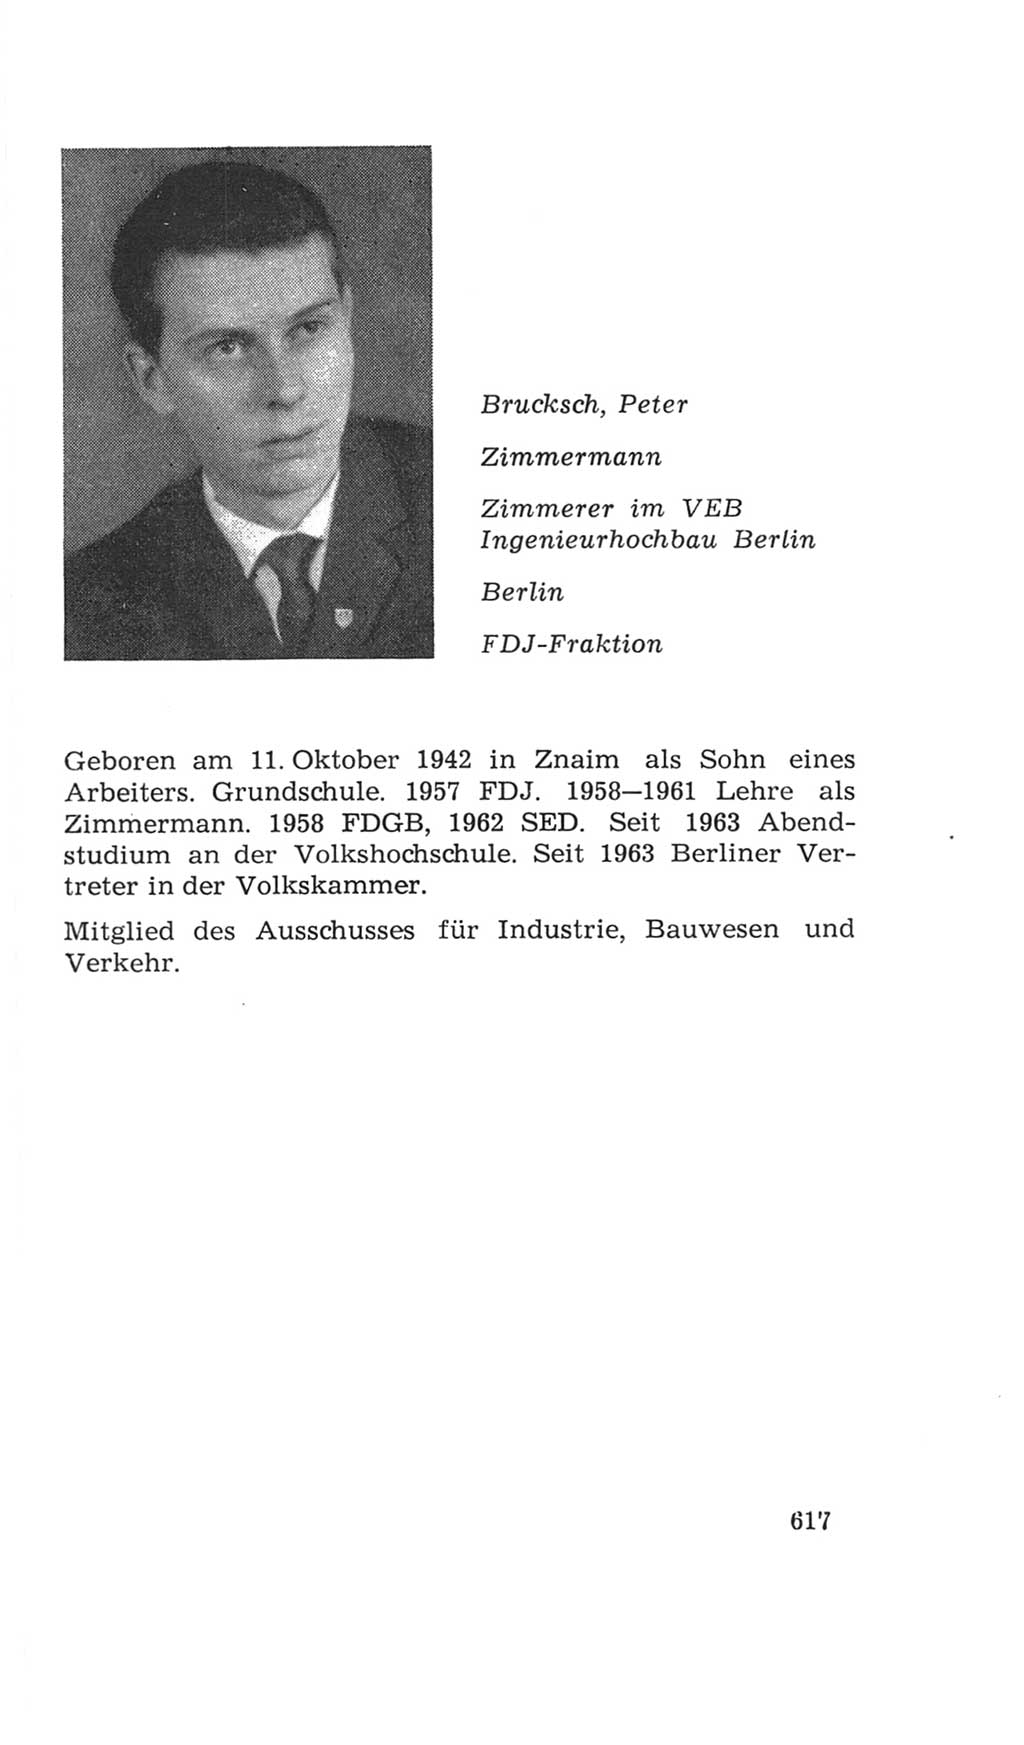 Volkskammer (VK) der Deutschen Demokratischen Republik (DDR), 4. Wahlperiode 1963-1967, Seite 617 (VK. DDR 4. WP. 1963-1967, S. 617)